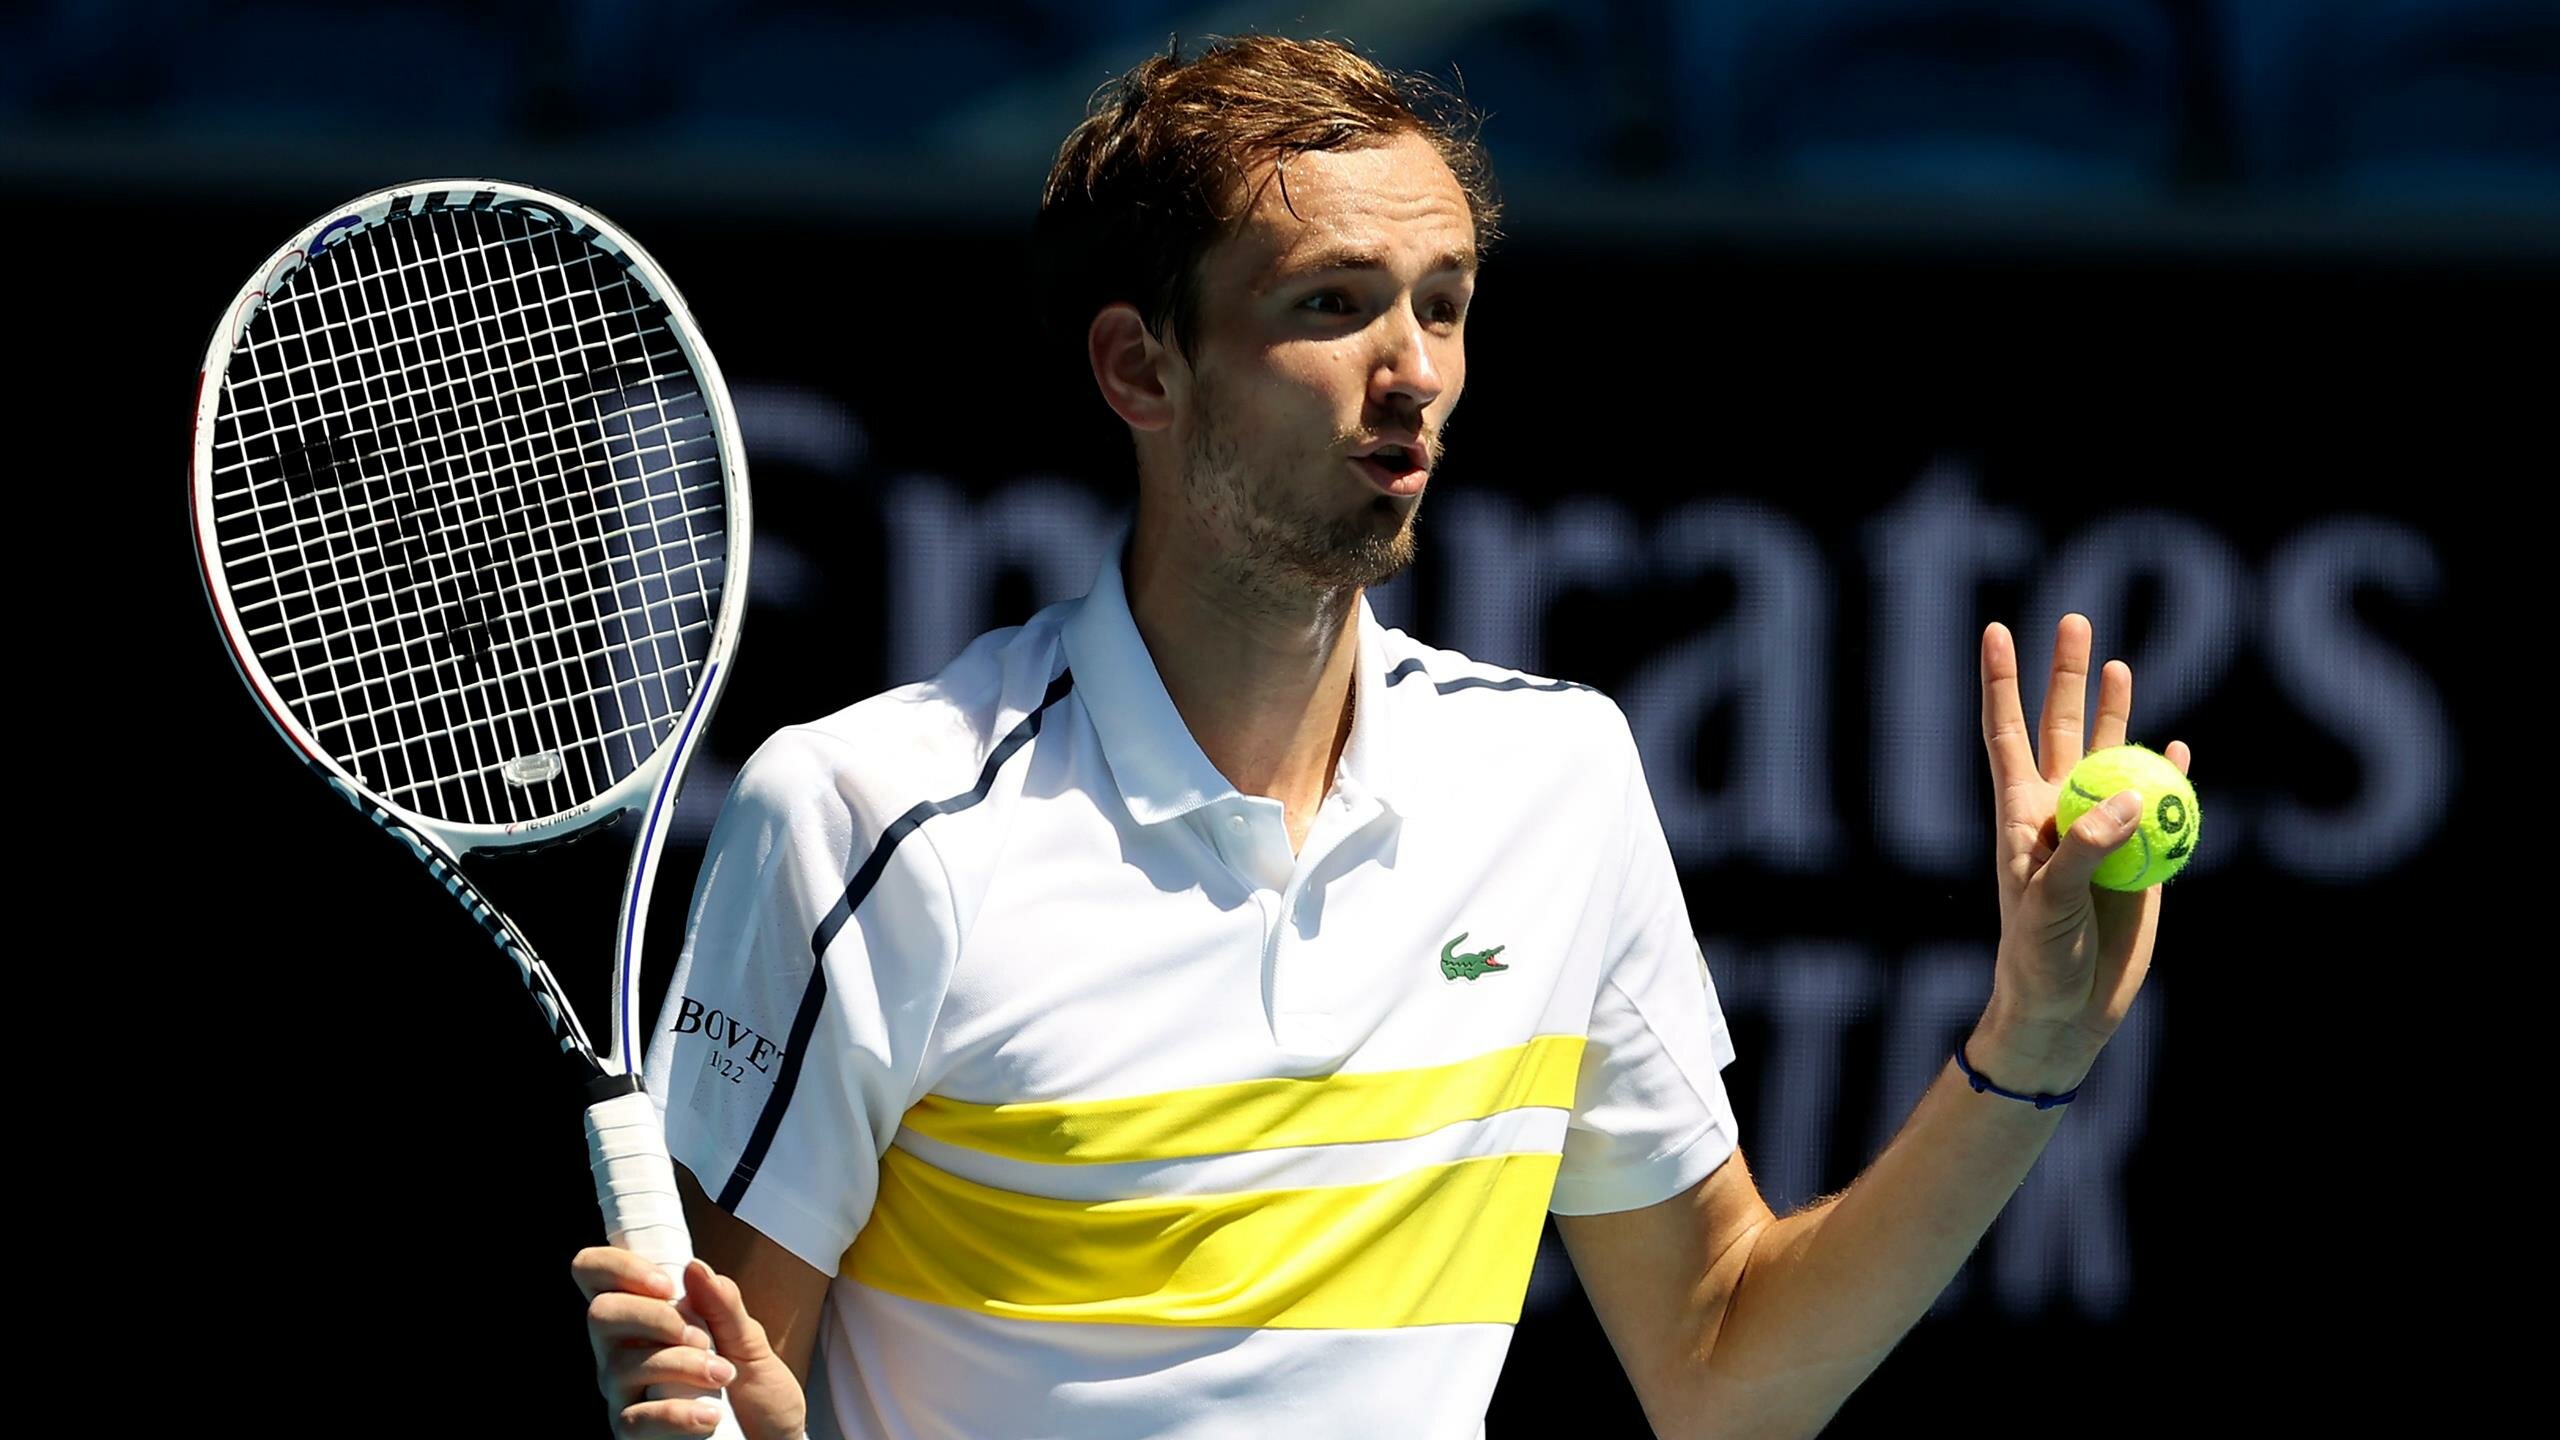 Вышел в финал со скандалом: чем отличился российский теннисист Медведев в Австралии